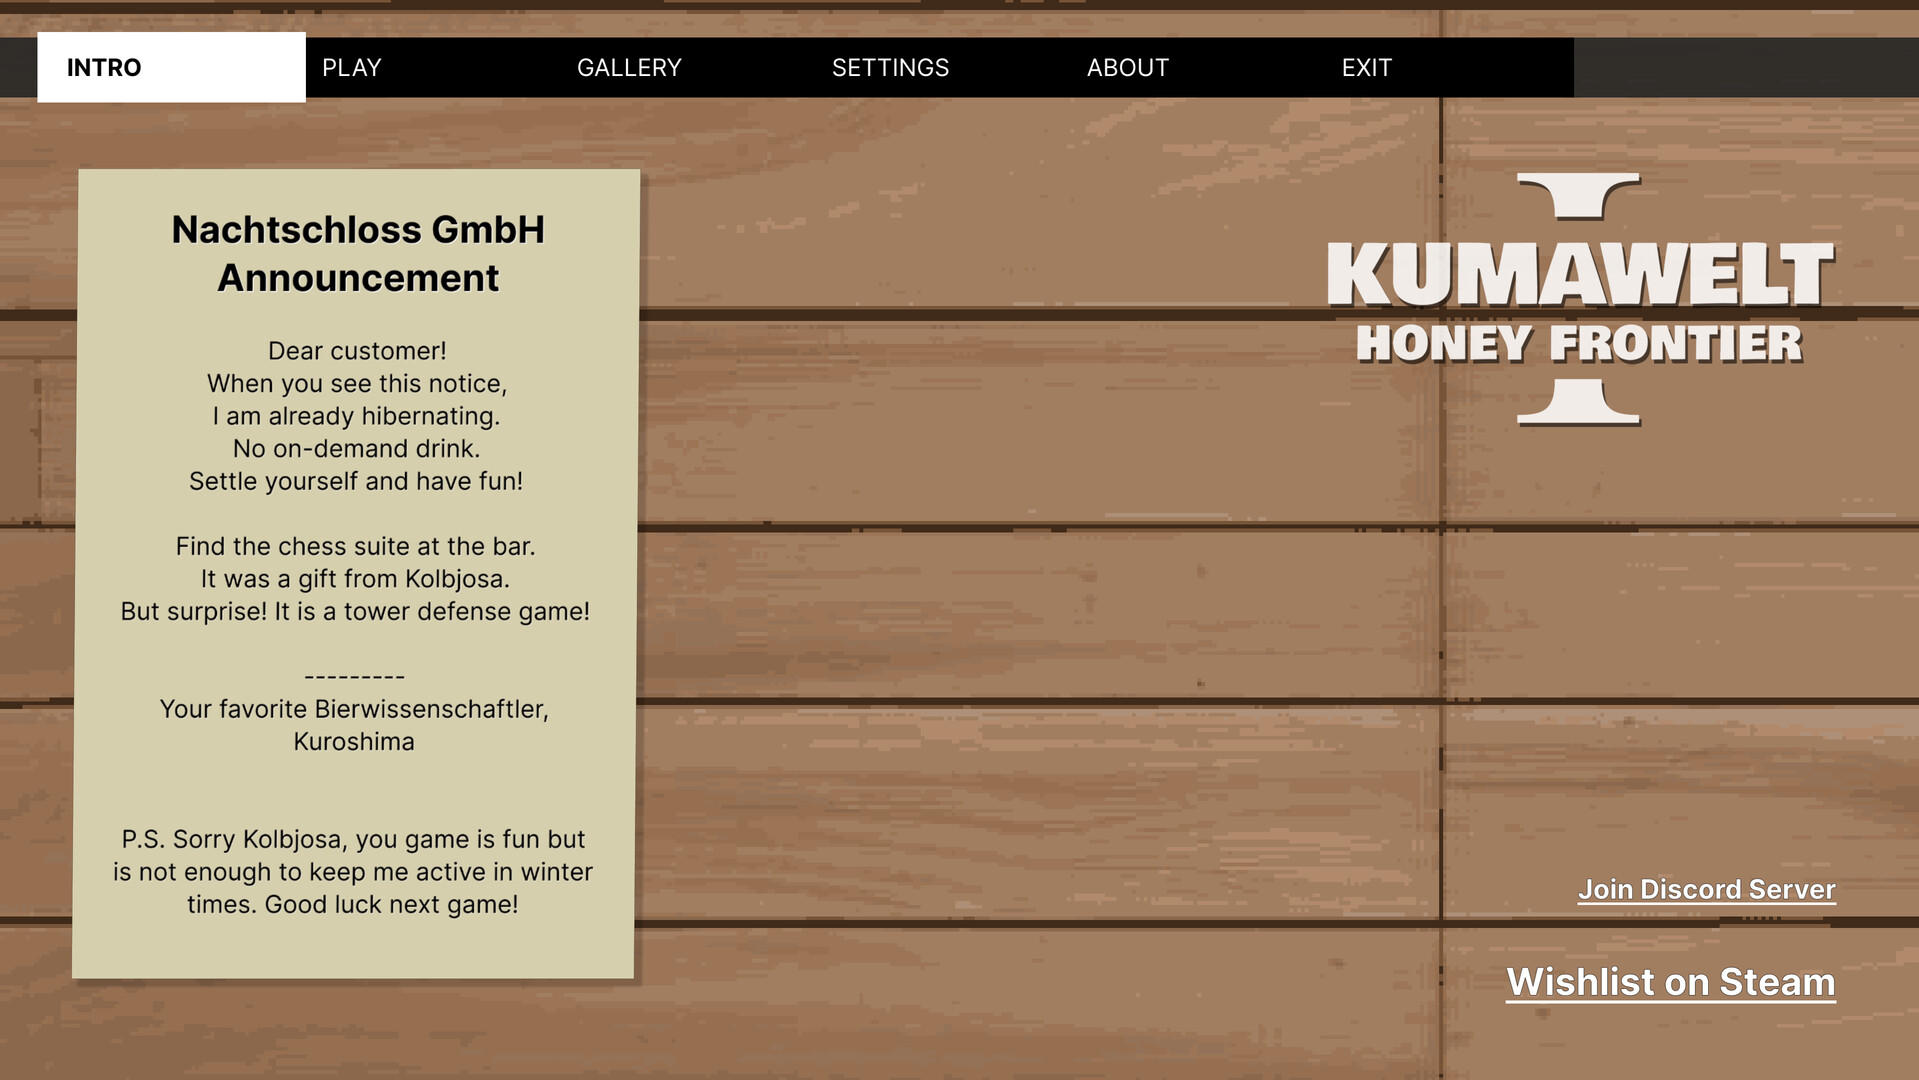 KumaWelt 1: Honey Frontier screenshot game